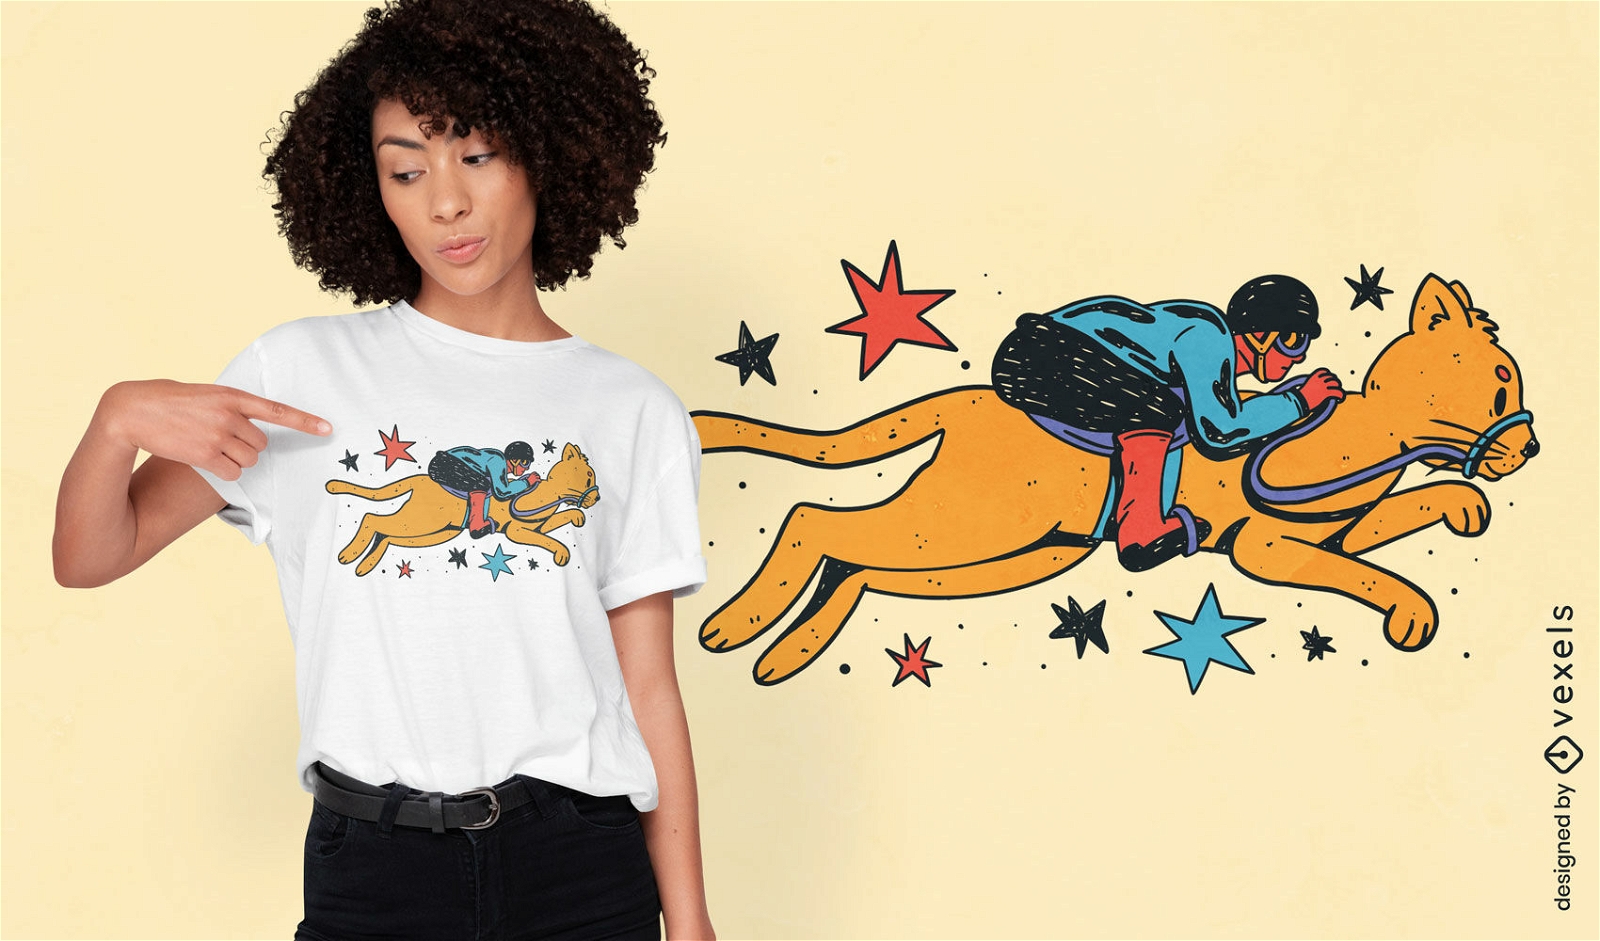 Jockey riding a cat t-shirt design